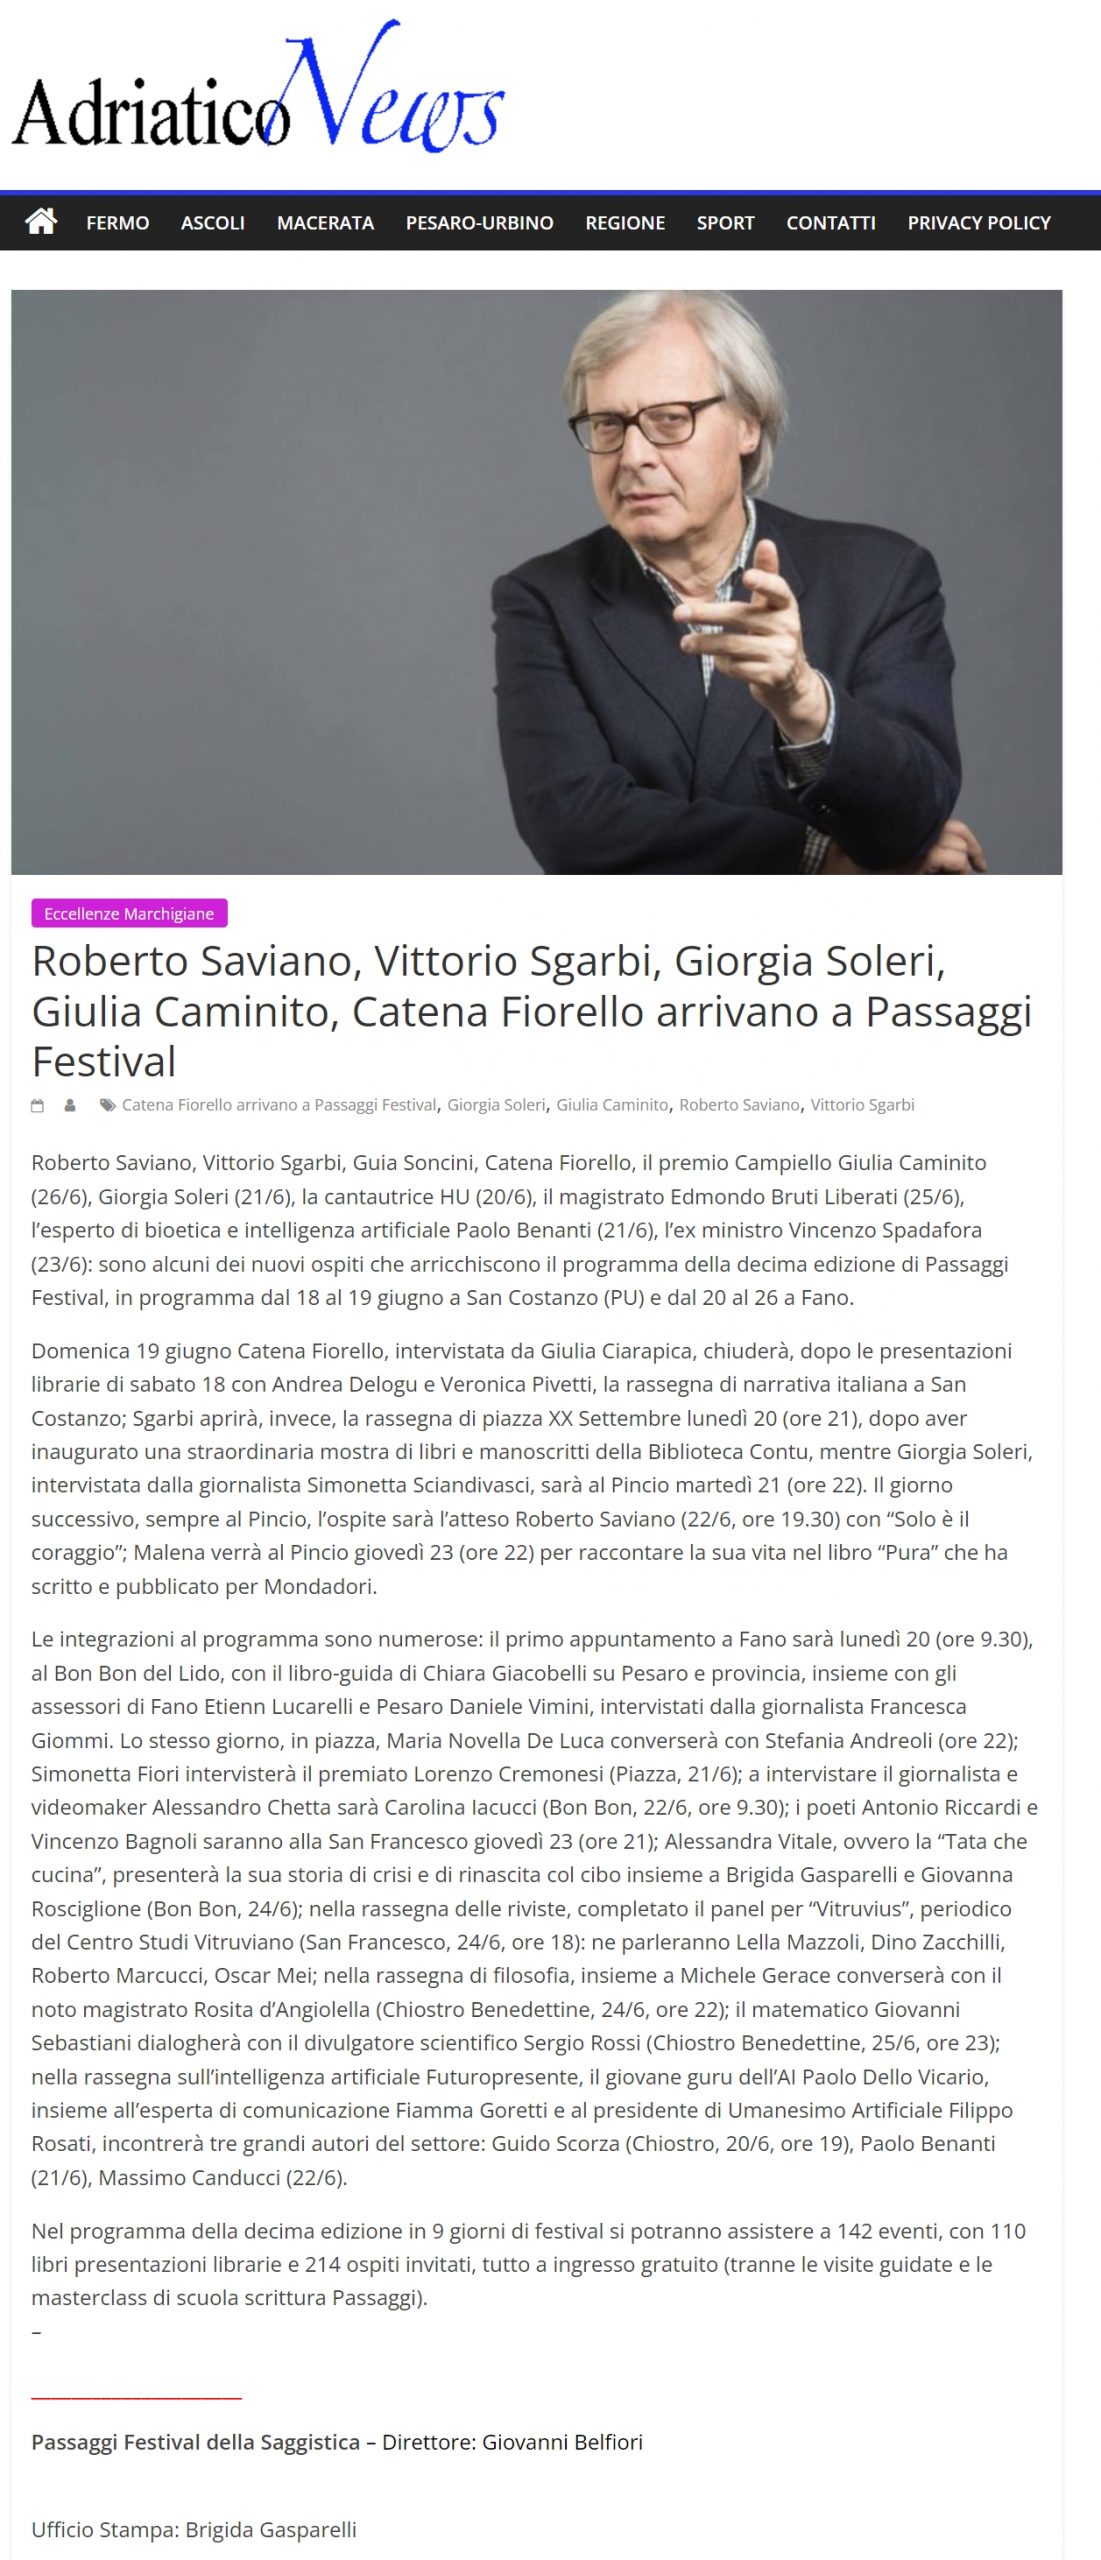 2022-05-24-adriatico-news-roberto-saviano-vittorio-sgarbi-giorgia-soleri-giulia-caminito-catena-fiorello-arrivano-a-passaggi-festival